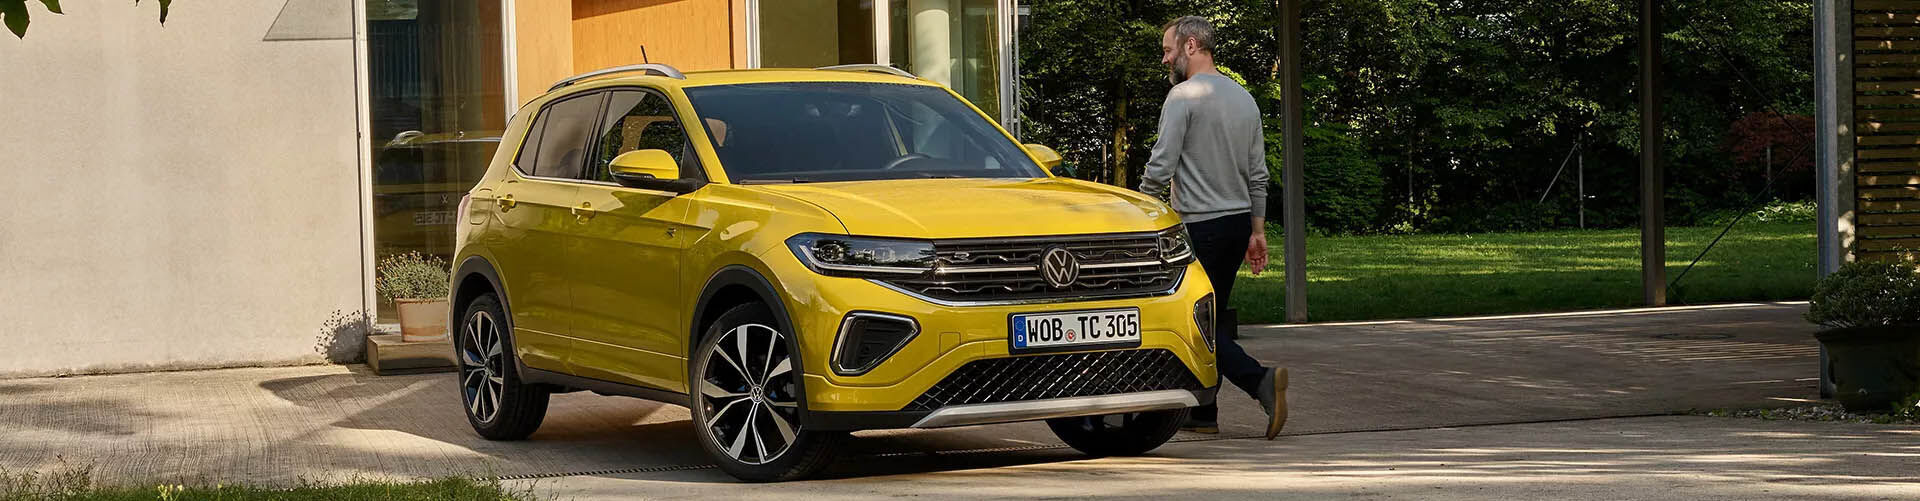 VW T-Cross Facelift in gelb